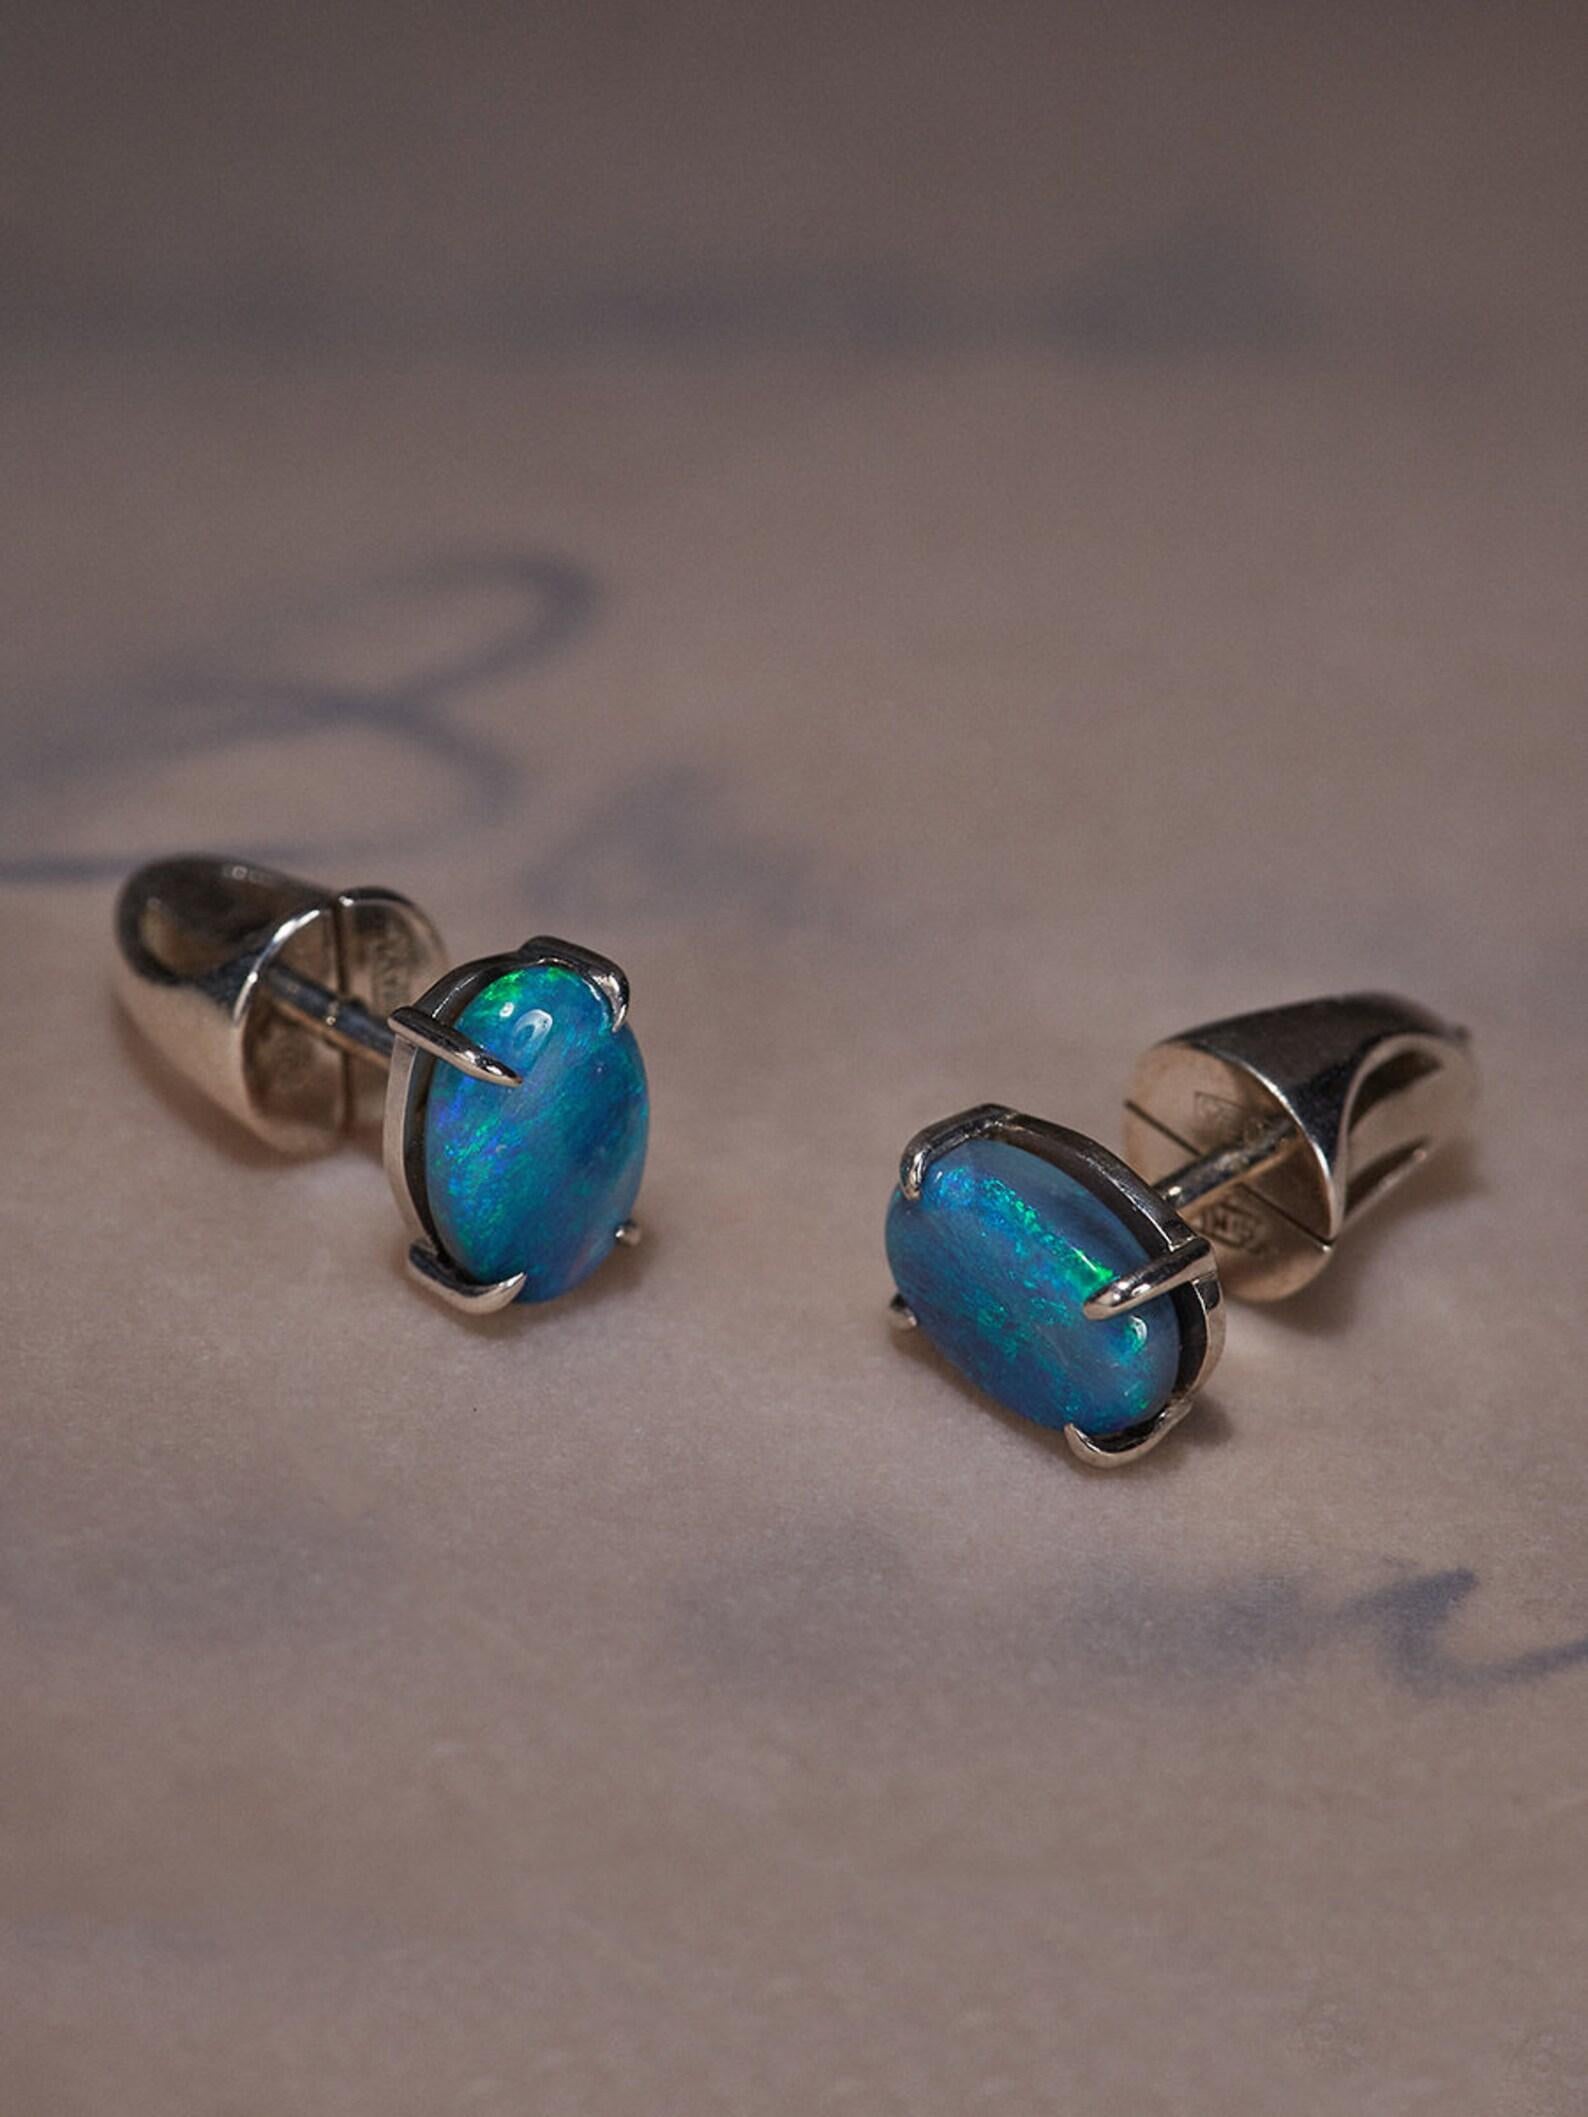 Oval Cut Black Opal Studs Earrings Natural Blue Australian Gemstones Unisex Jewelry